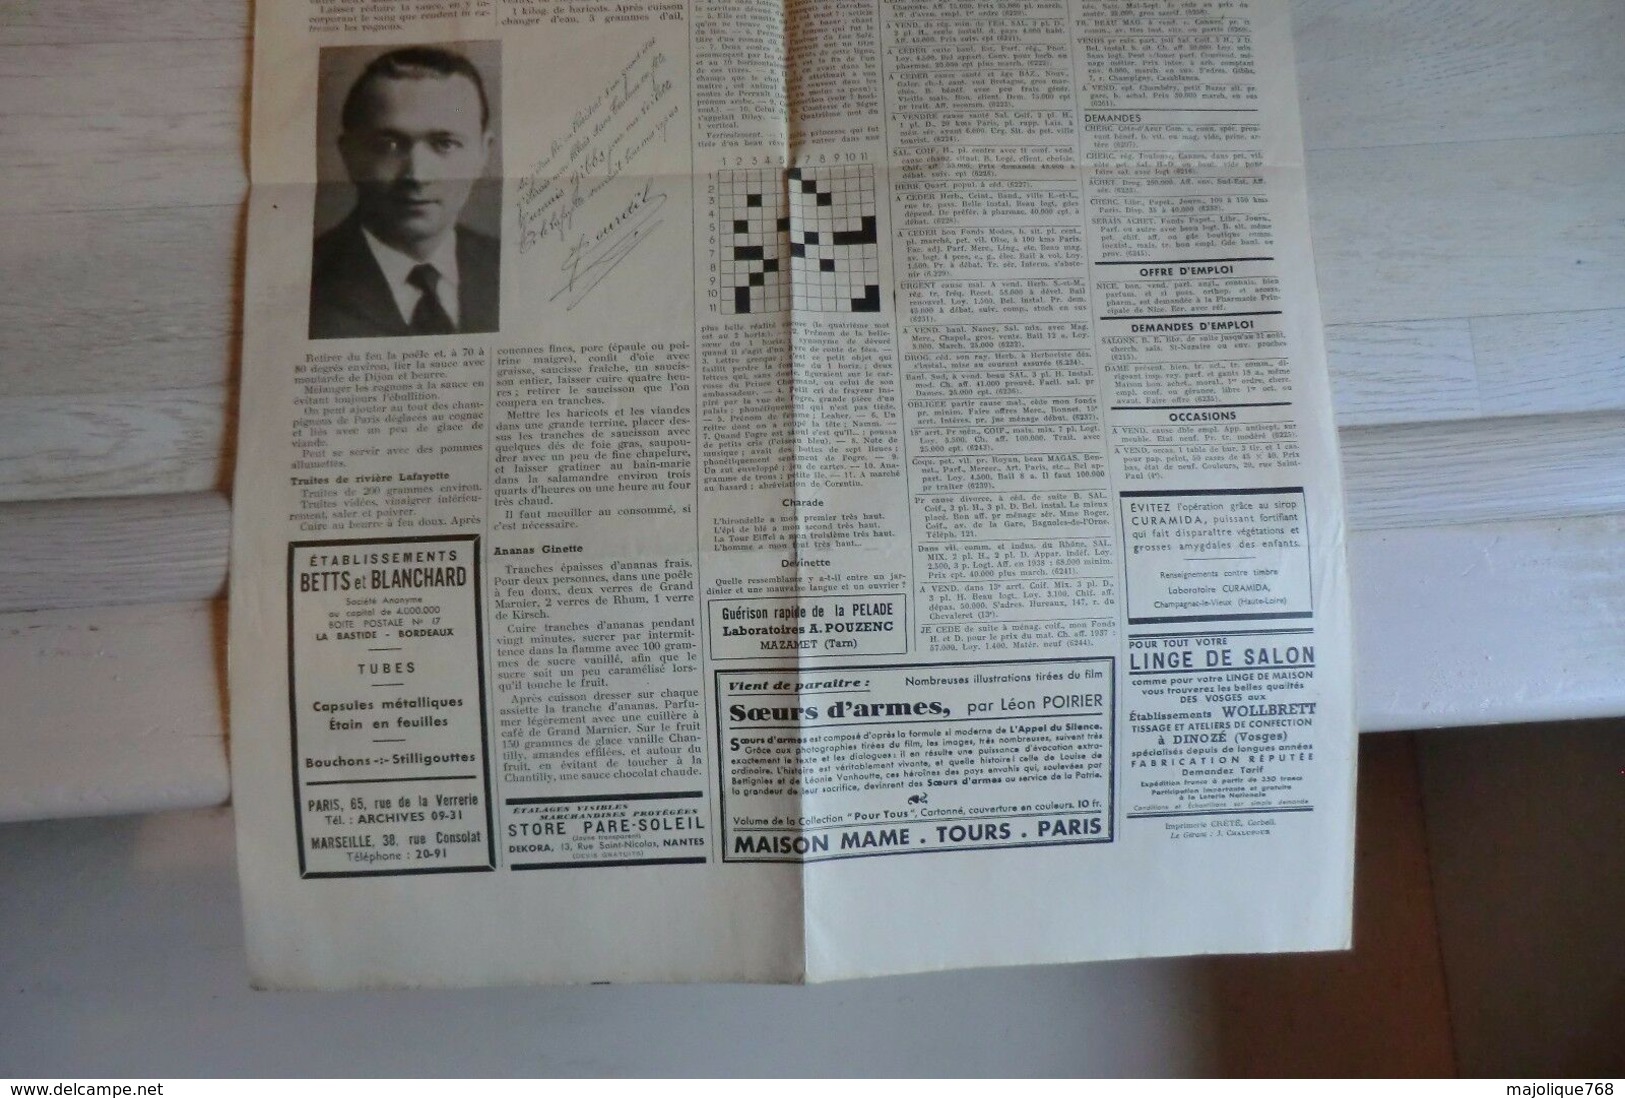 le courrier de Gibbs 14 année N°145 du 15 juillet 1938